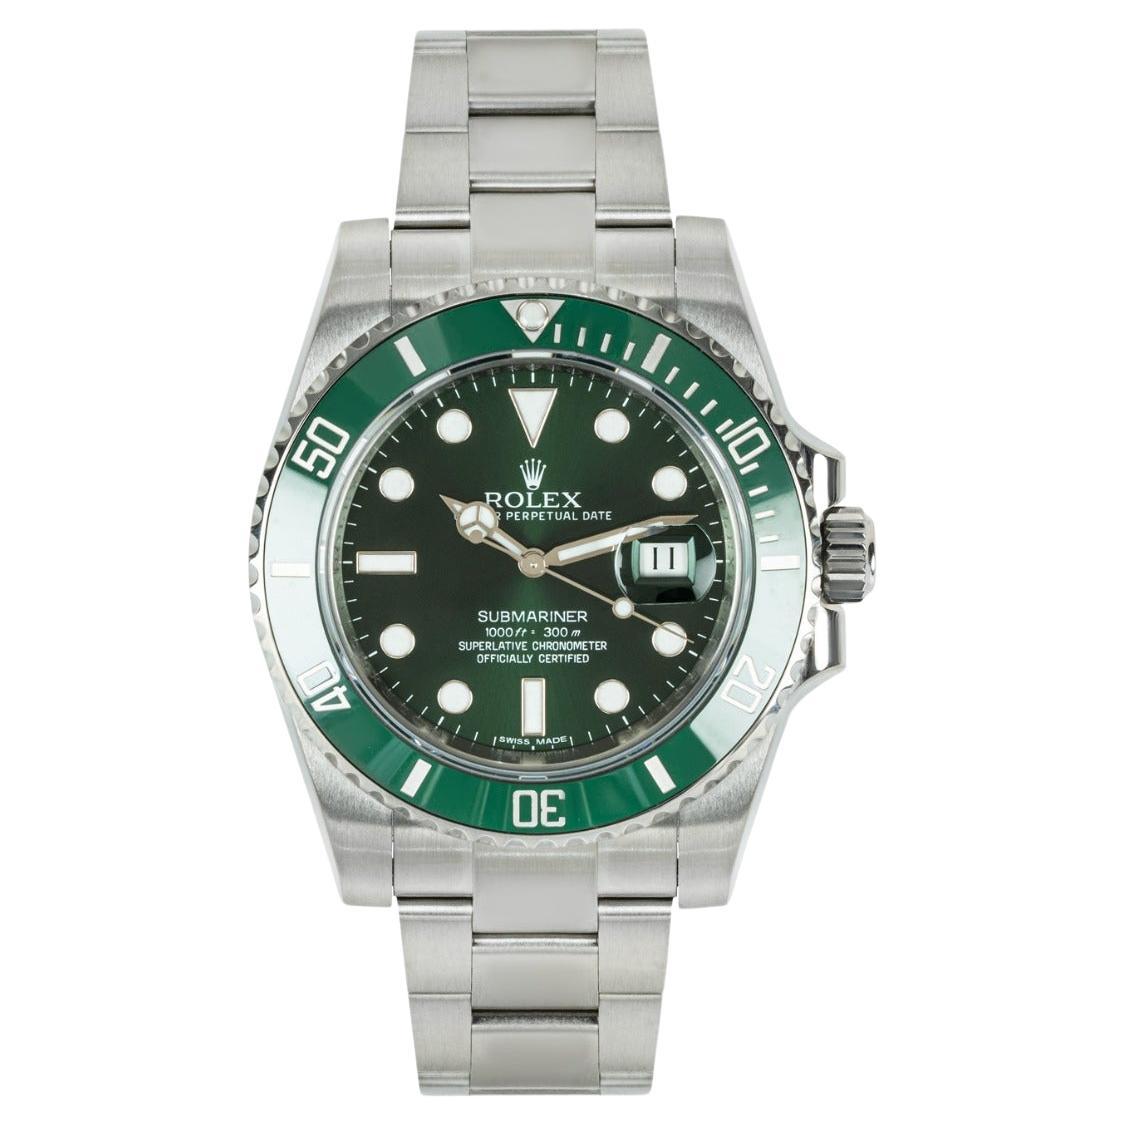 How do I ship a Rolex watch?